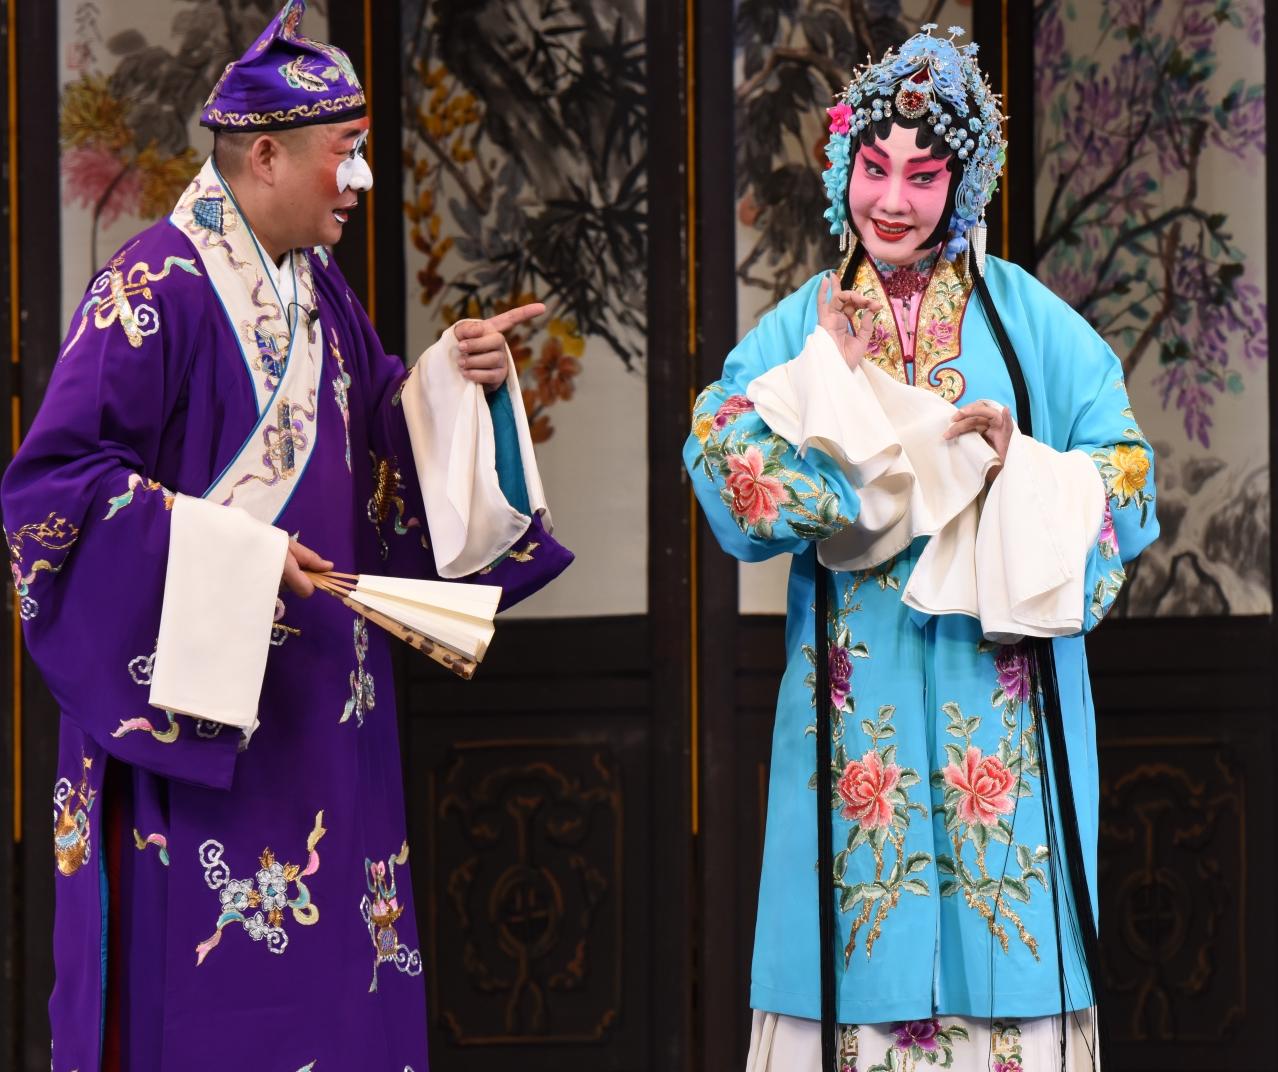 康樂及文化事務署邀得北京京劇院六月中旬來港，獻演三場京劇藝術大師張君秋的青衣流派經典劇目作為今年中國戲曲節的開幕節目。圖為《詩文會》劇照。